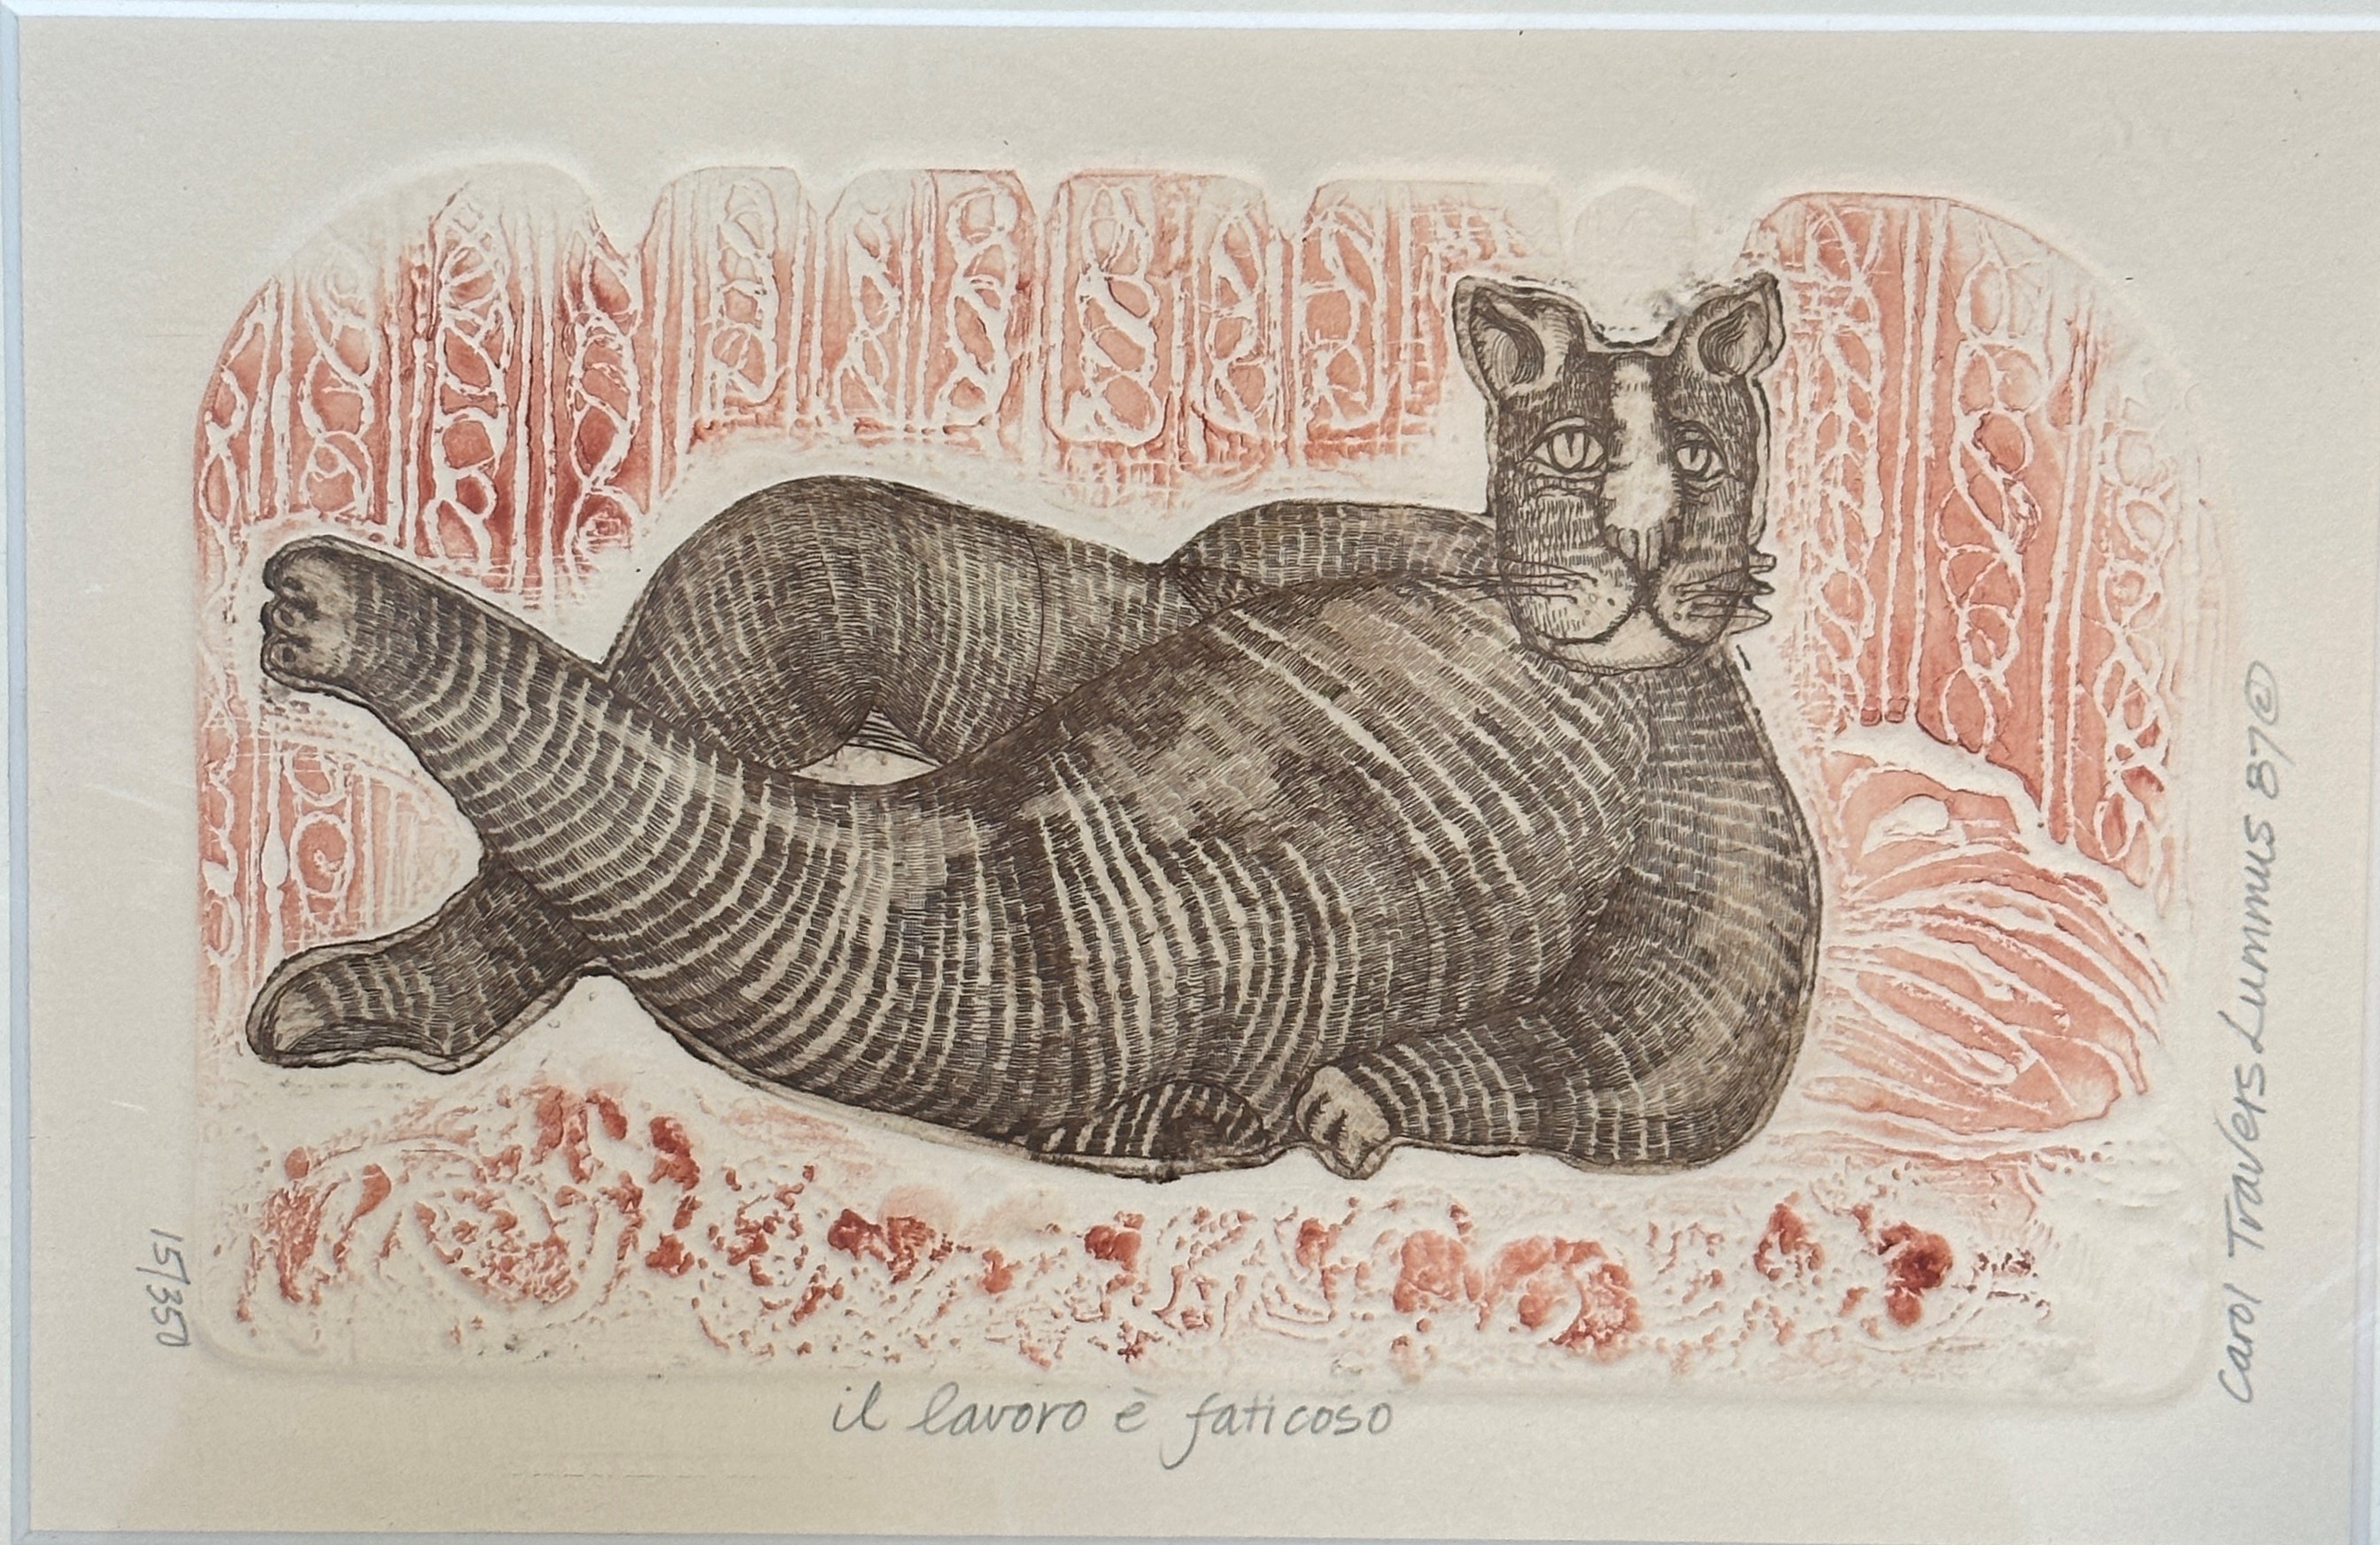 Carol Travers Lummus (American, 1937- ), il lavoro e faticoso, engraving highlighted with colour